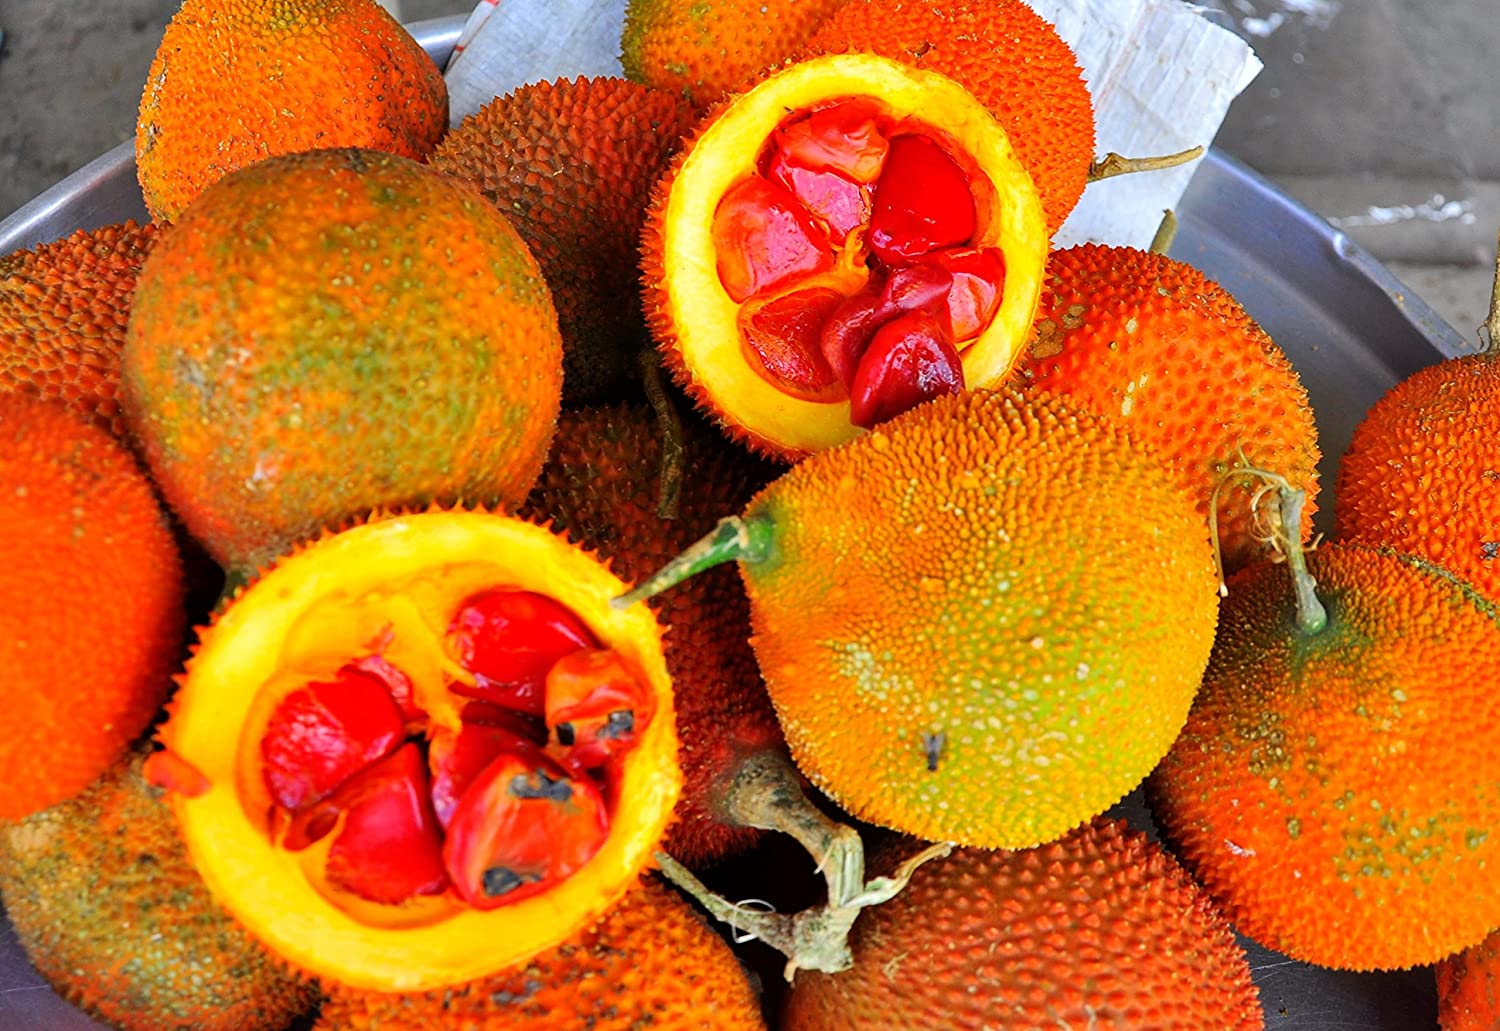 Момордика фрукт Вьетнам